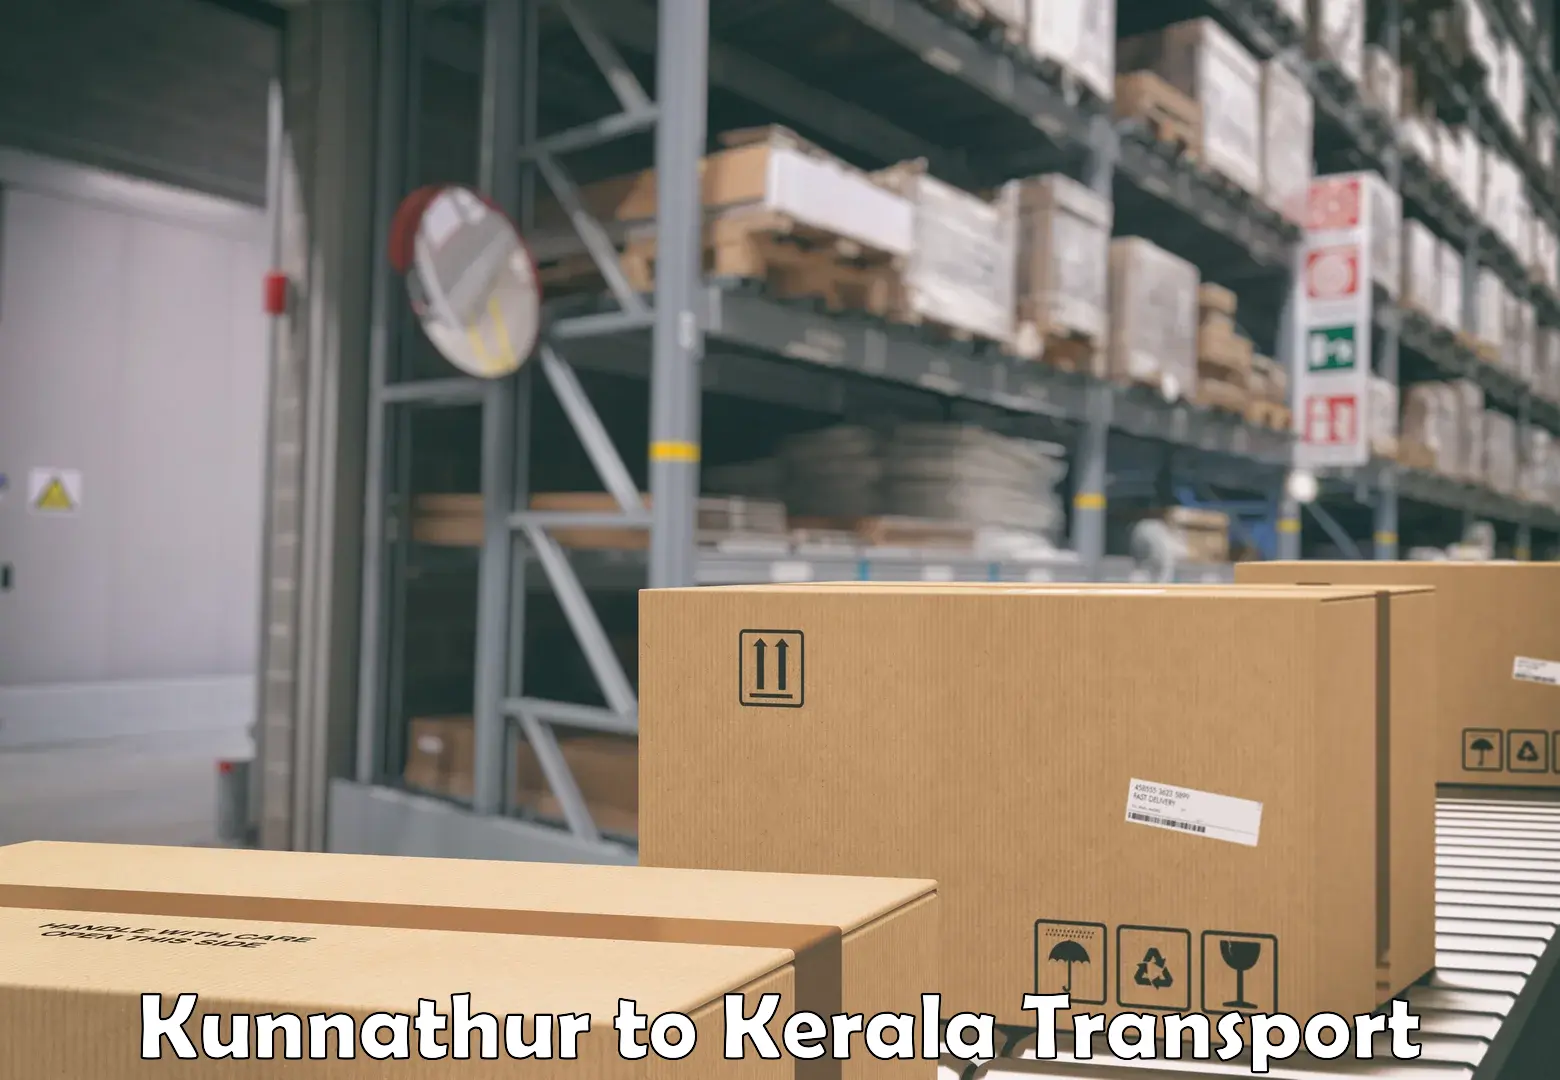 International cargo transportation services Kunnathur to Kalluvathukkal